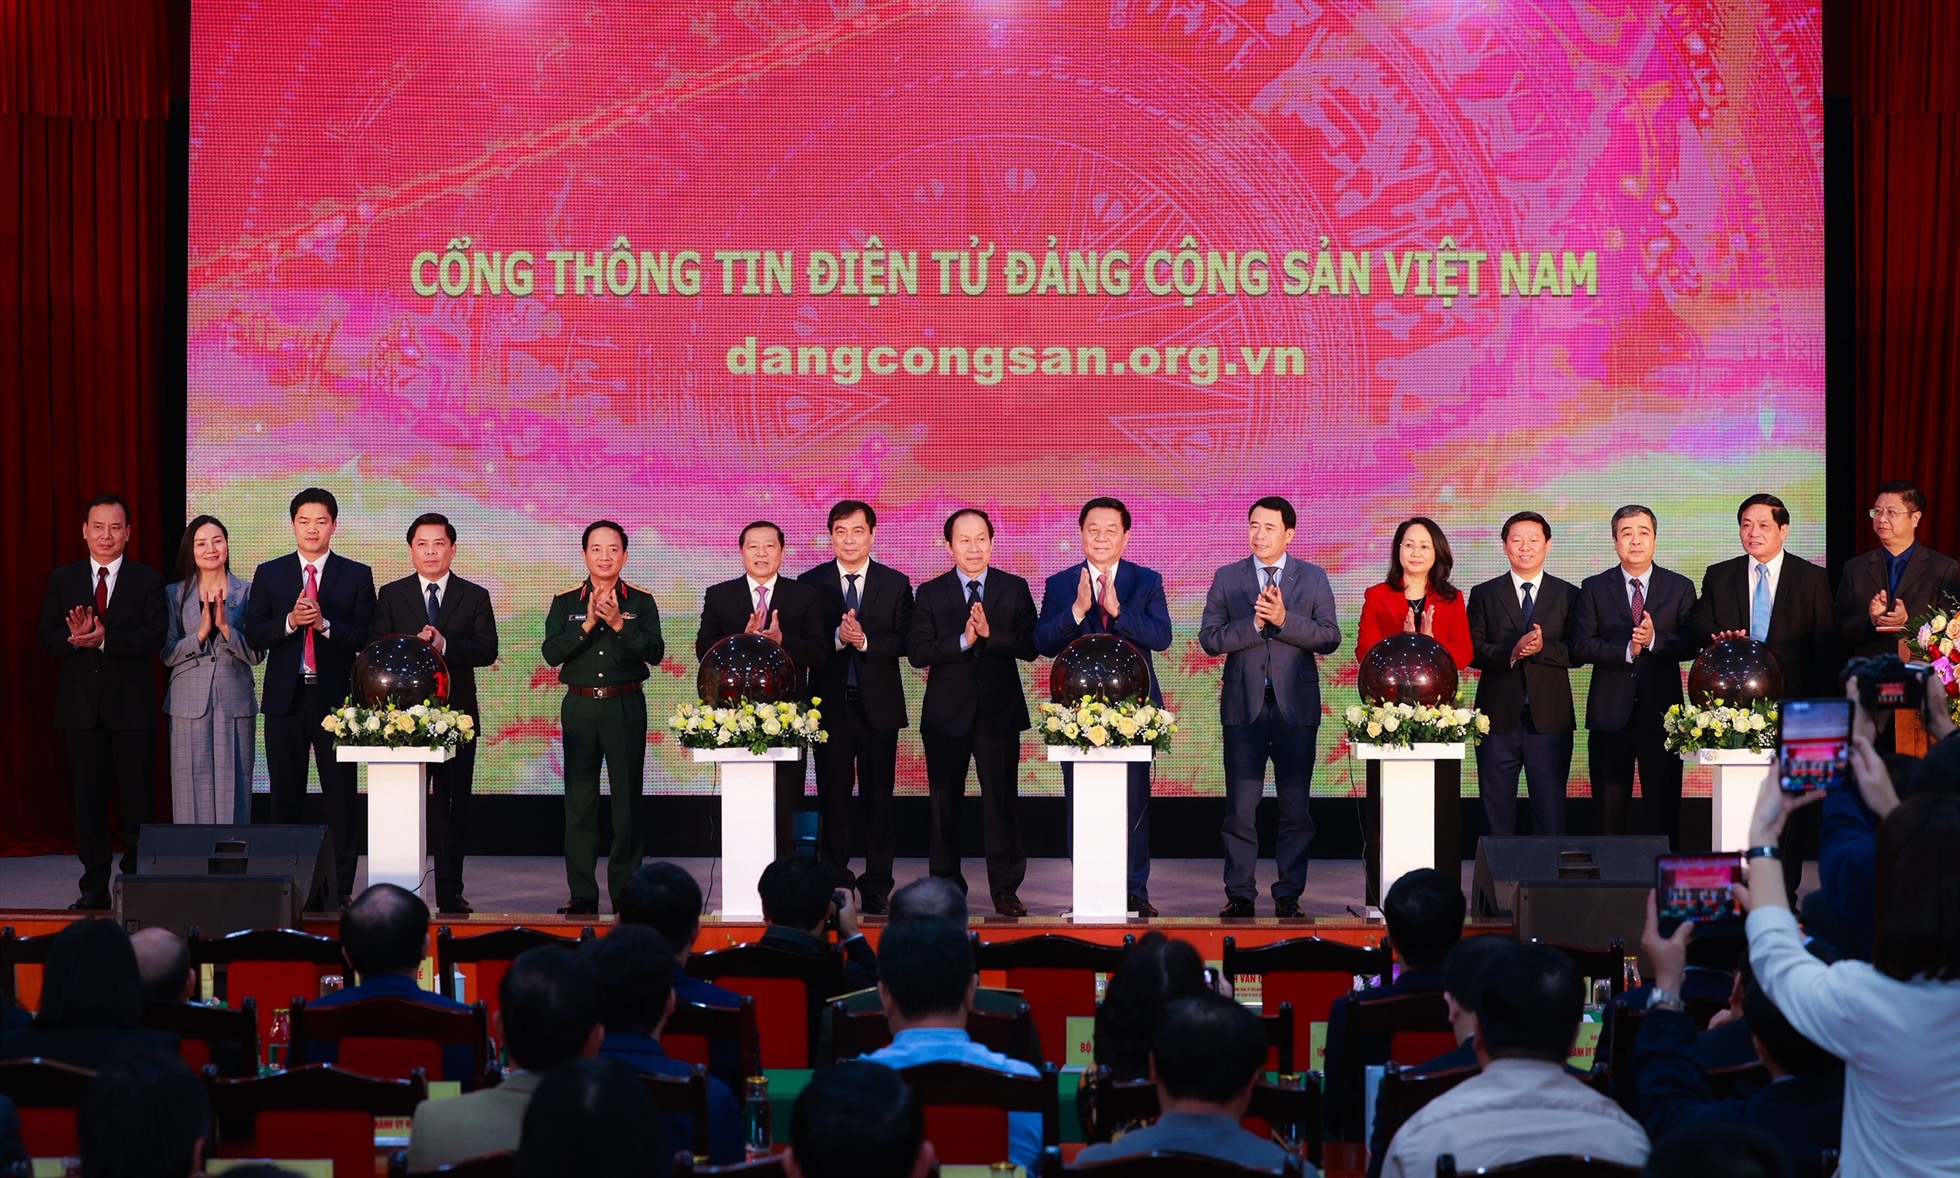 Lãnh đạo Đảng, Nhà nước nhấn nút khai trương Cổng Thông tin điện tử Đảng Cộng sản. Ảnh: Hải Nguyễn